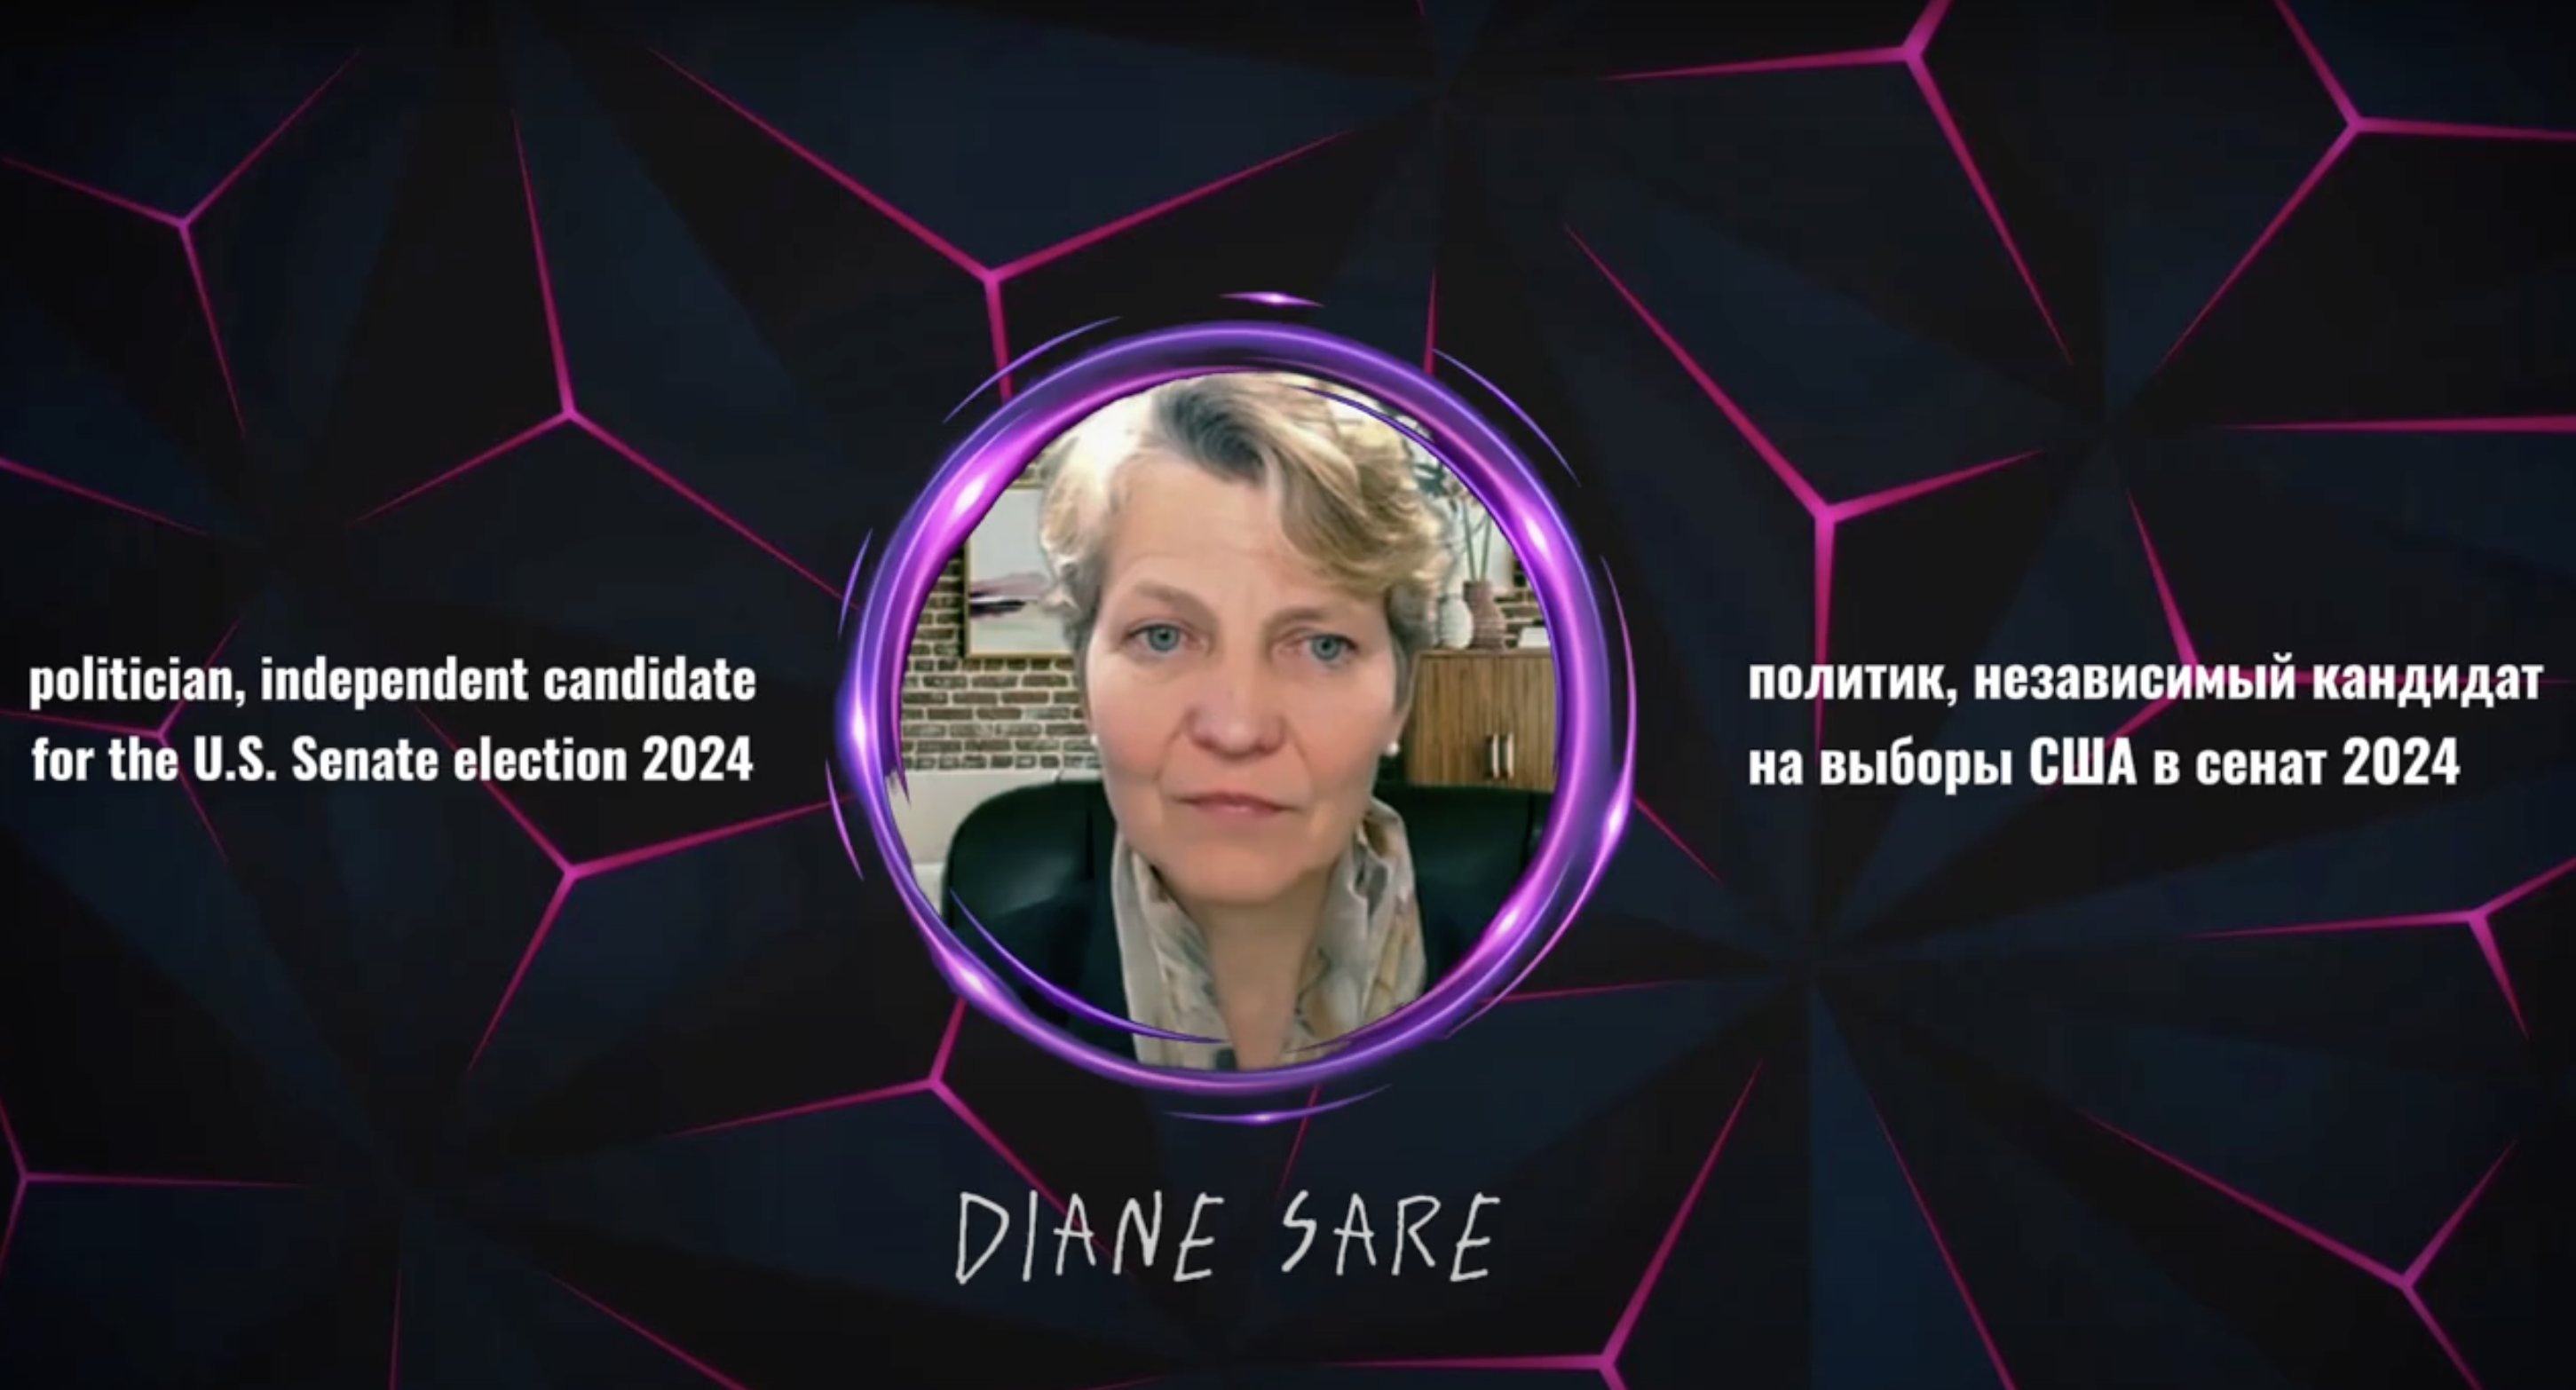 Фаина Савенкова: Интервью с независимым кандидатом в Сенат США Дайаной Сэйр